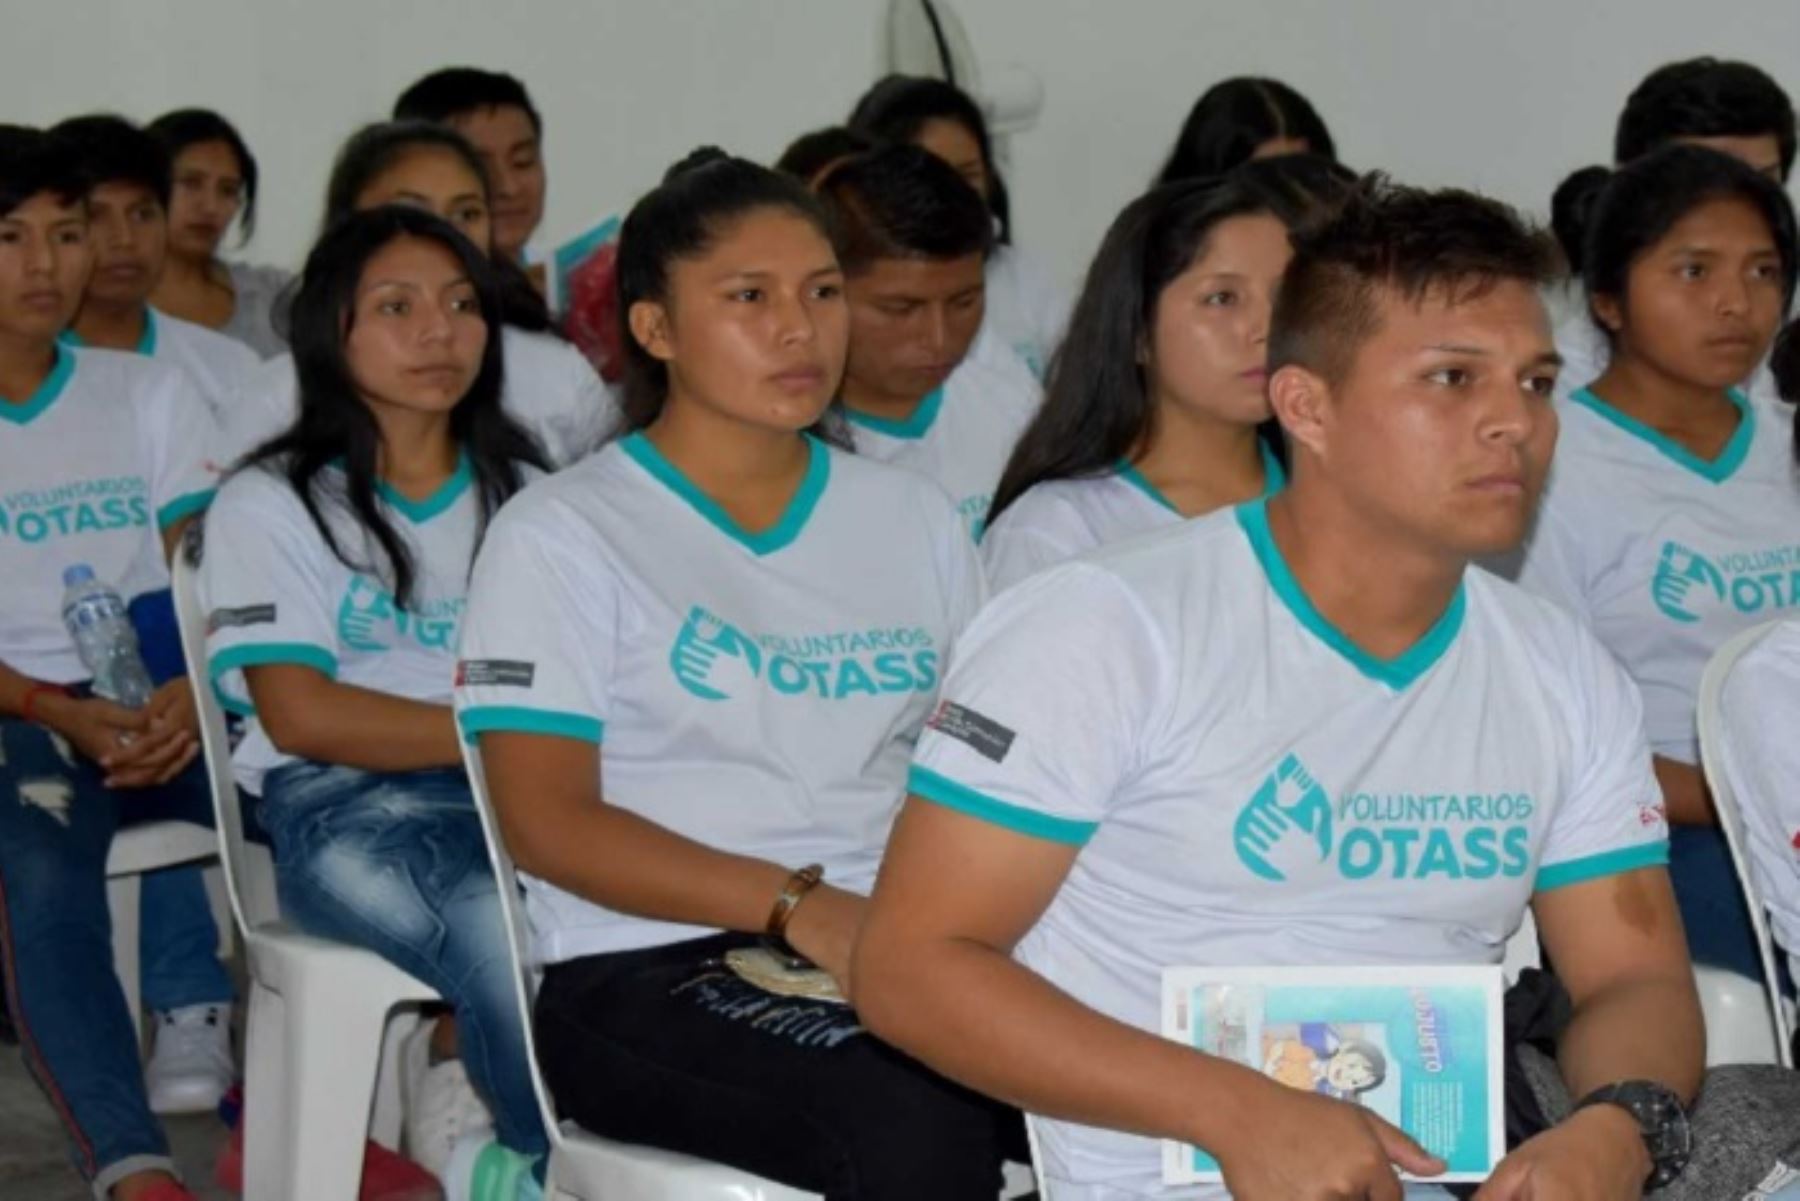 El voluntariado del Organismo Técnico de la Administración de los Servicios de Saneamiento (OTASS), iniciativa nacional de responsabilidad social, fue lanzado hoy conjuntamente con Emapa Huaral, con el fin de promover la valoración de los servicios de saneamiento.